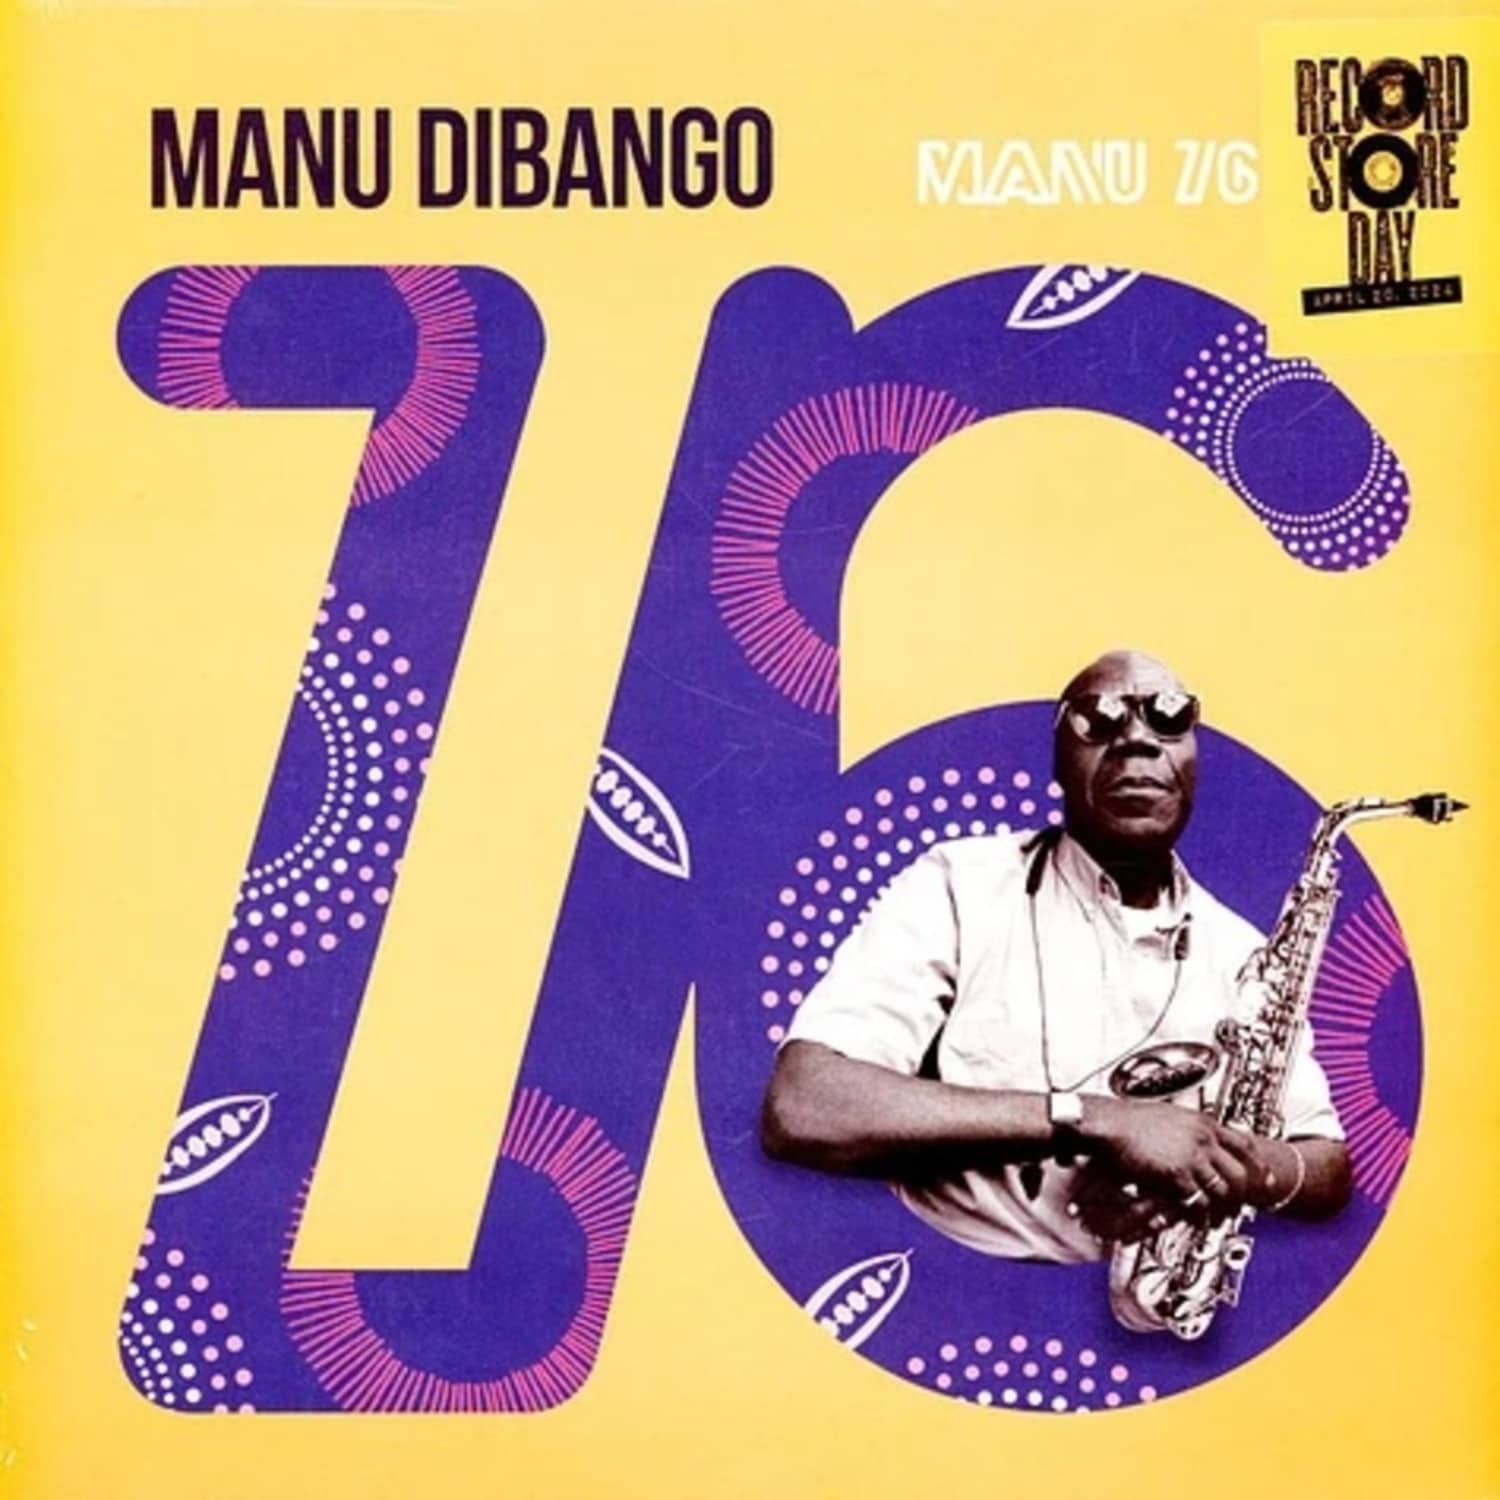 Manu Dibango - MANU 76 